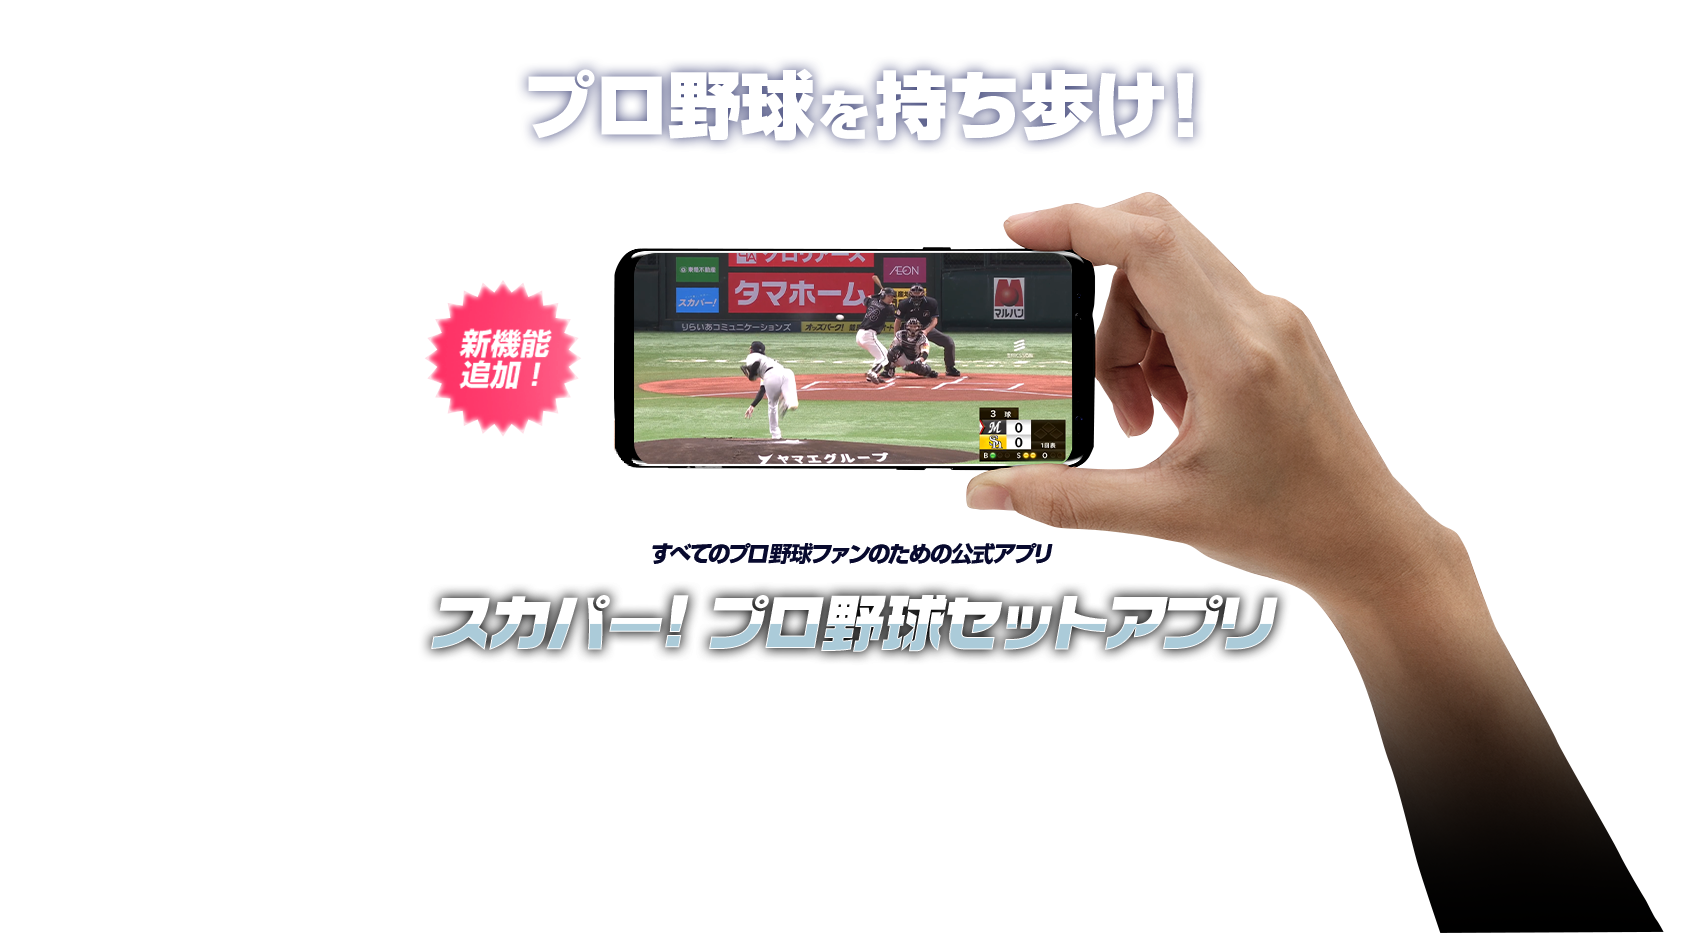 プロ野球を持ち歩け！ すべてのプロ野球ファンのための公式アプリ スカパー! プロ野球セットアプリ